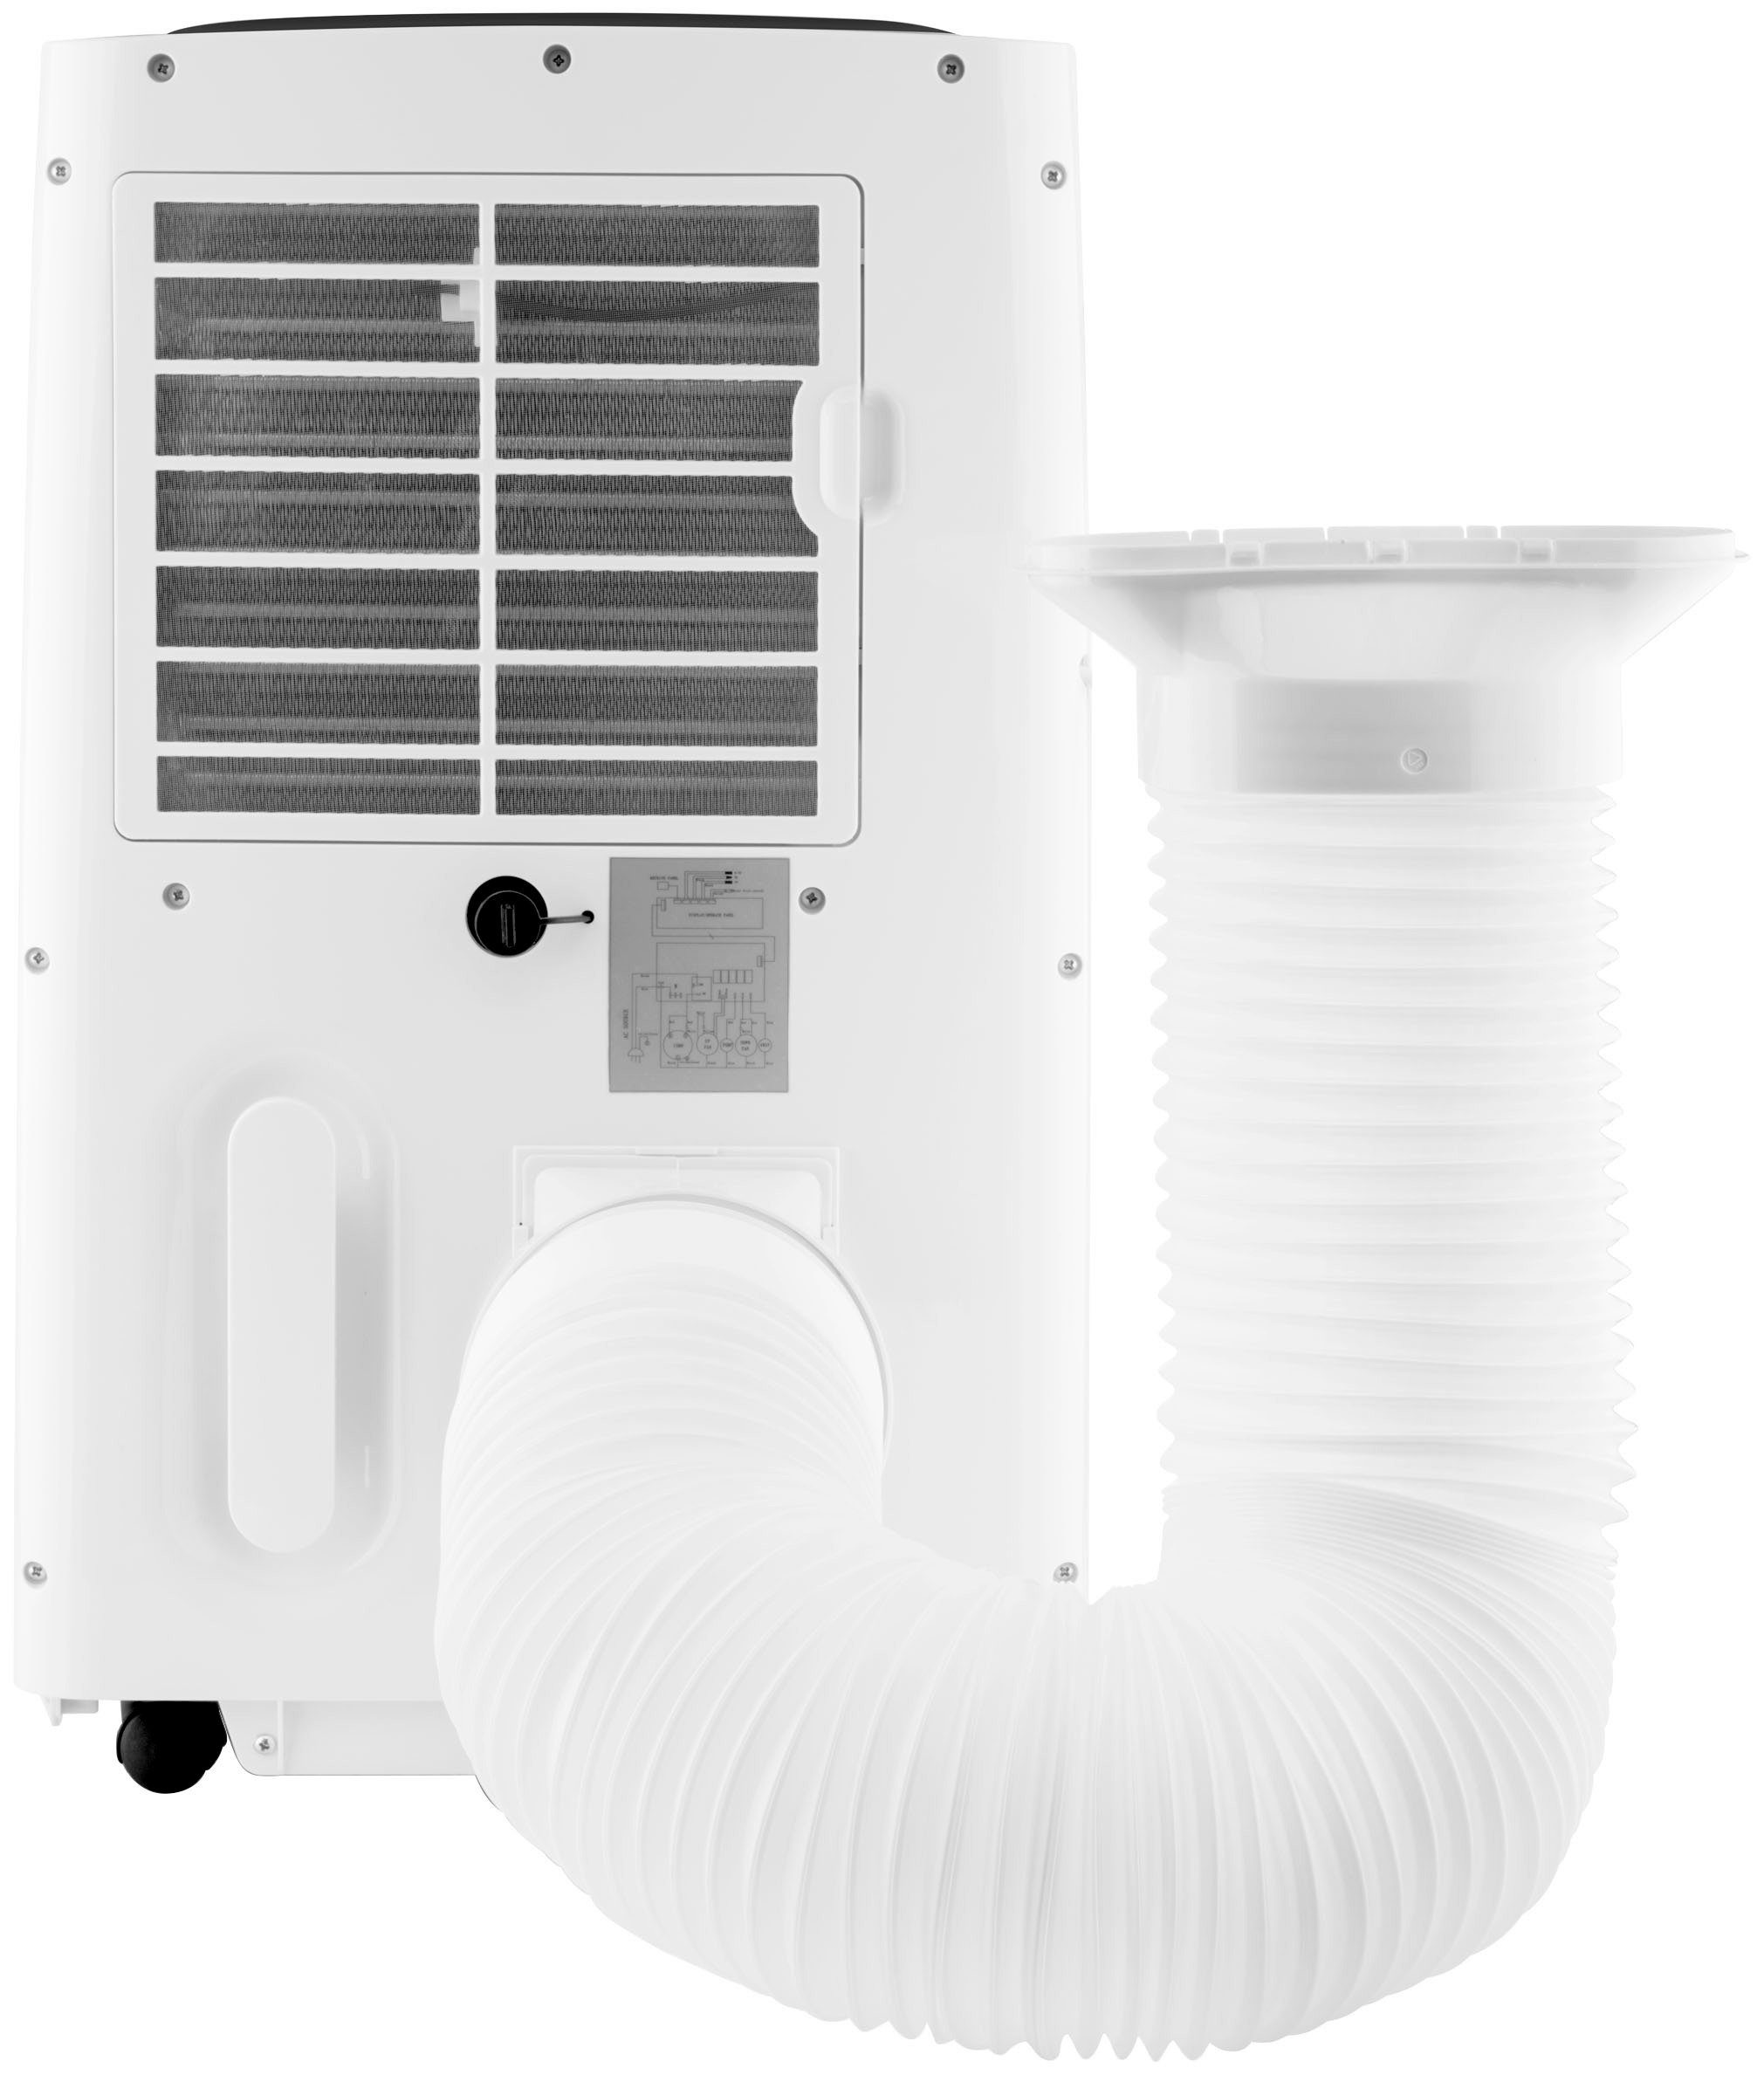 l 1 3-in-1-Klimagerät Freezy, eta Fassungsvermögen